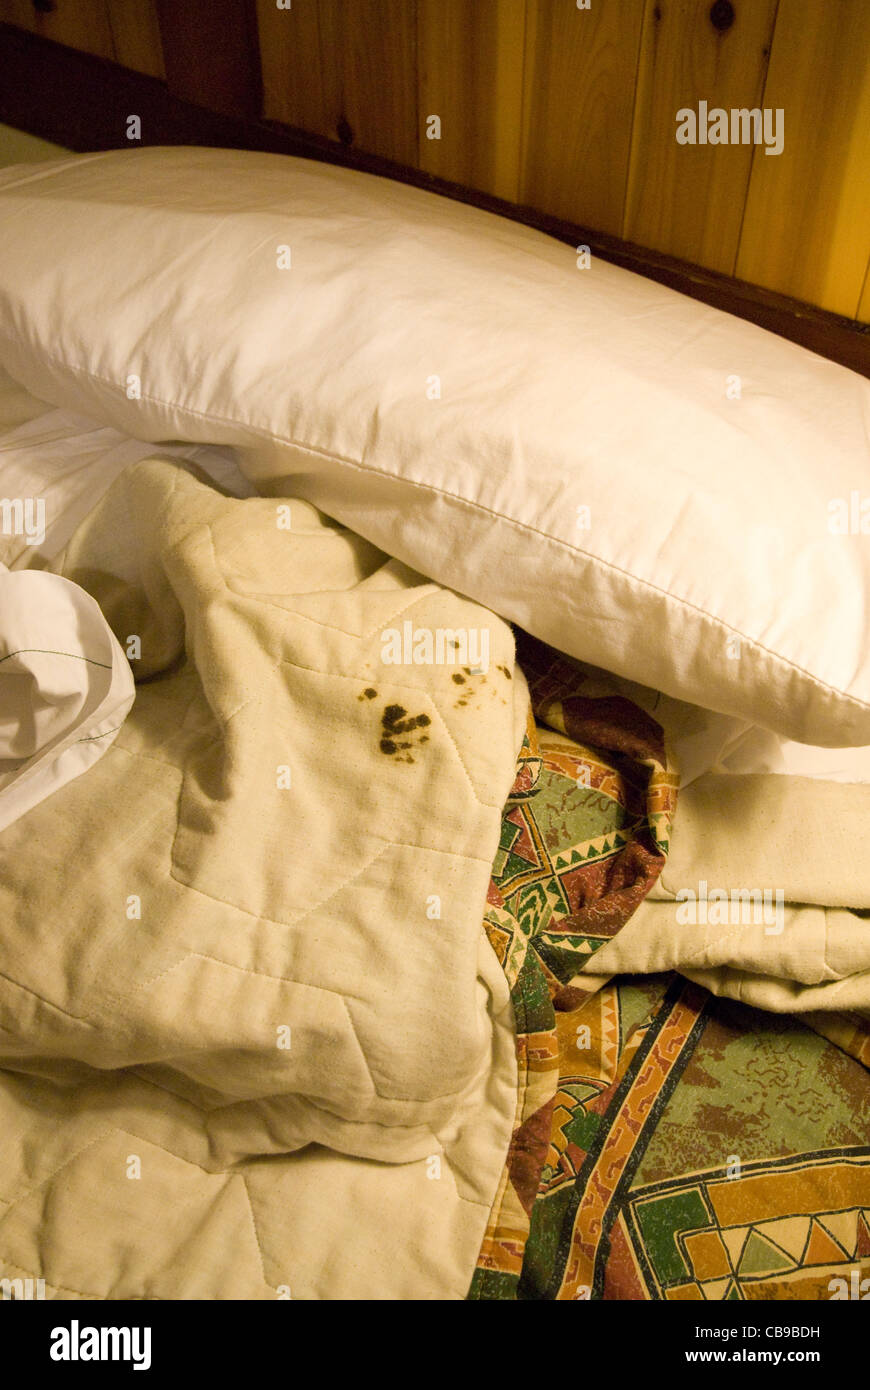 El problema de la limpieza en las habitaciones del hotel es evidenciado por manchas de sangre seca en el edredón en una habitación de motel de Texas Foto de stock